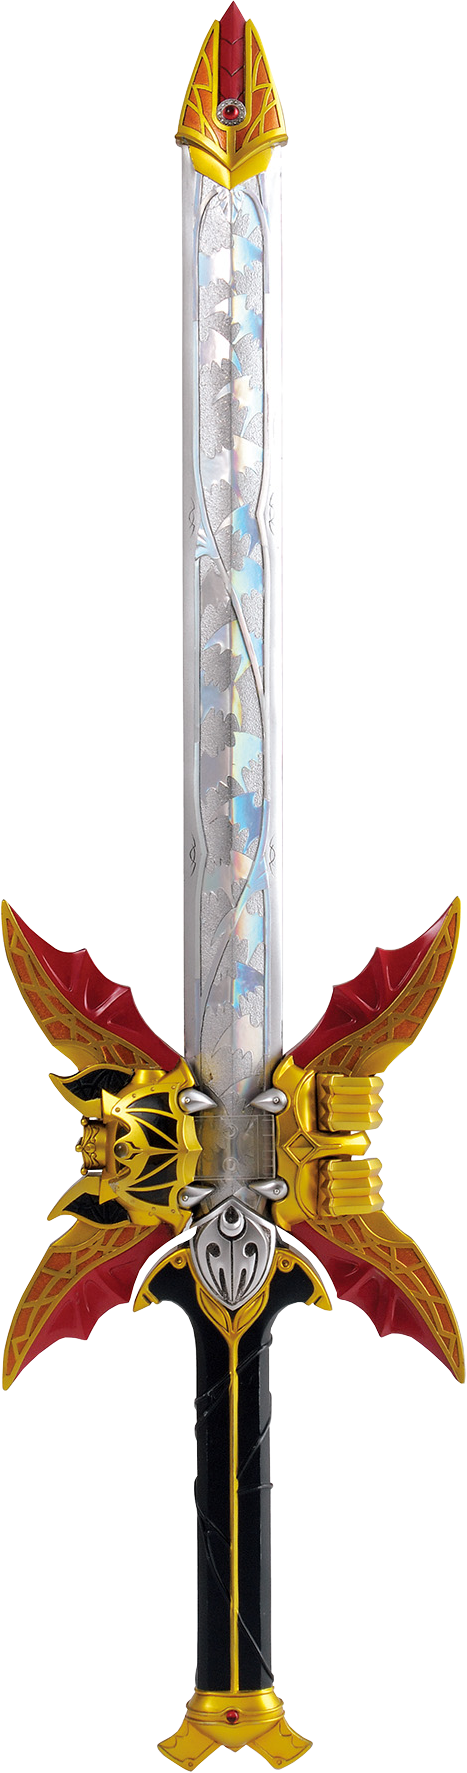 kamen rider kiva emperor form sword